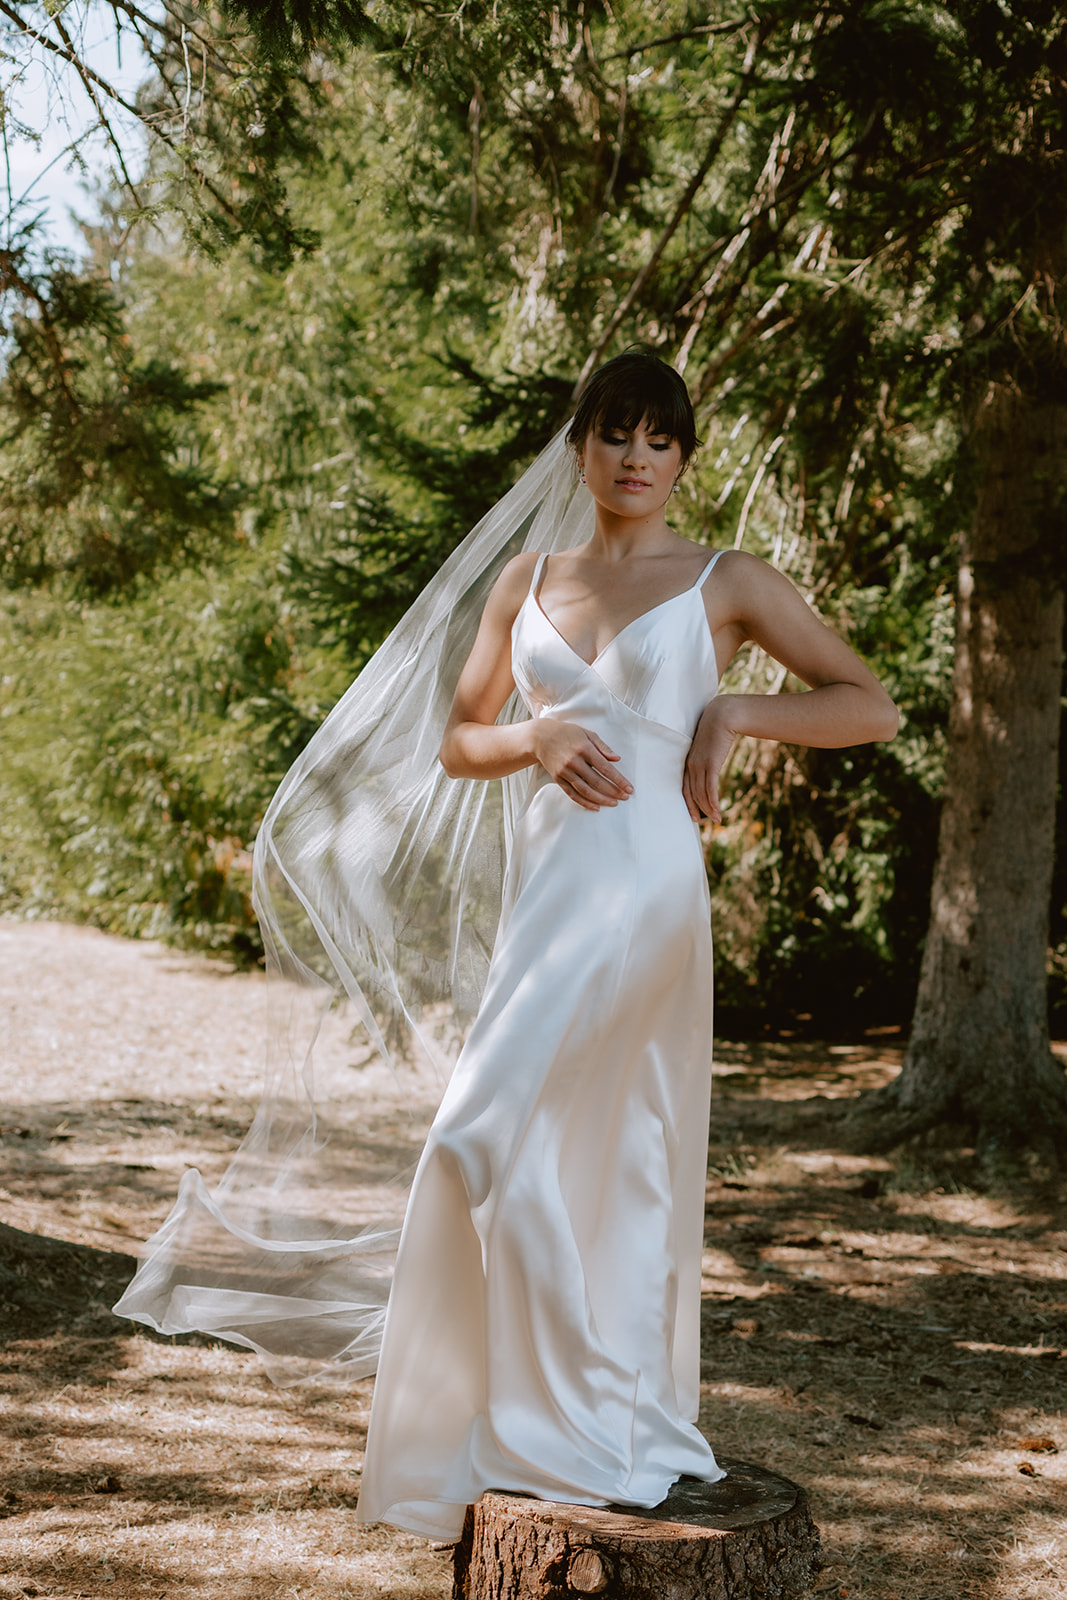 Giselle a line wedding dress - Cicada Bridal